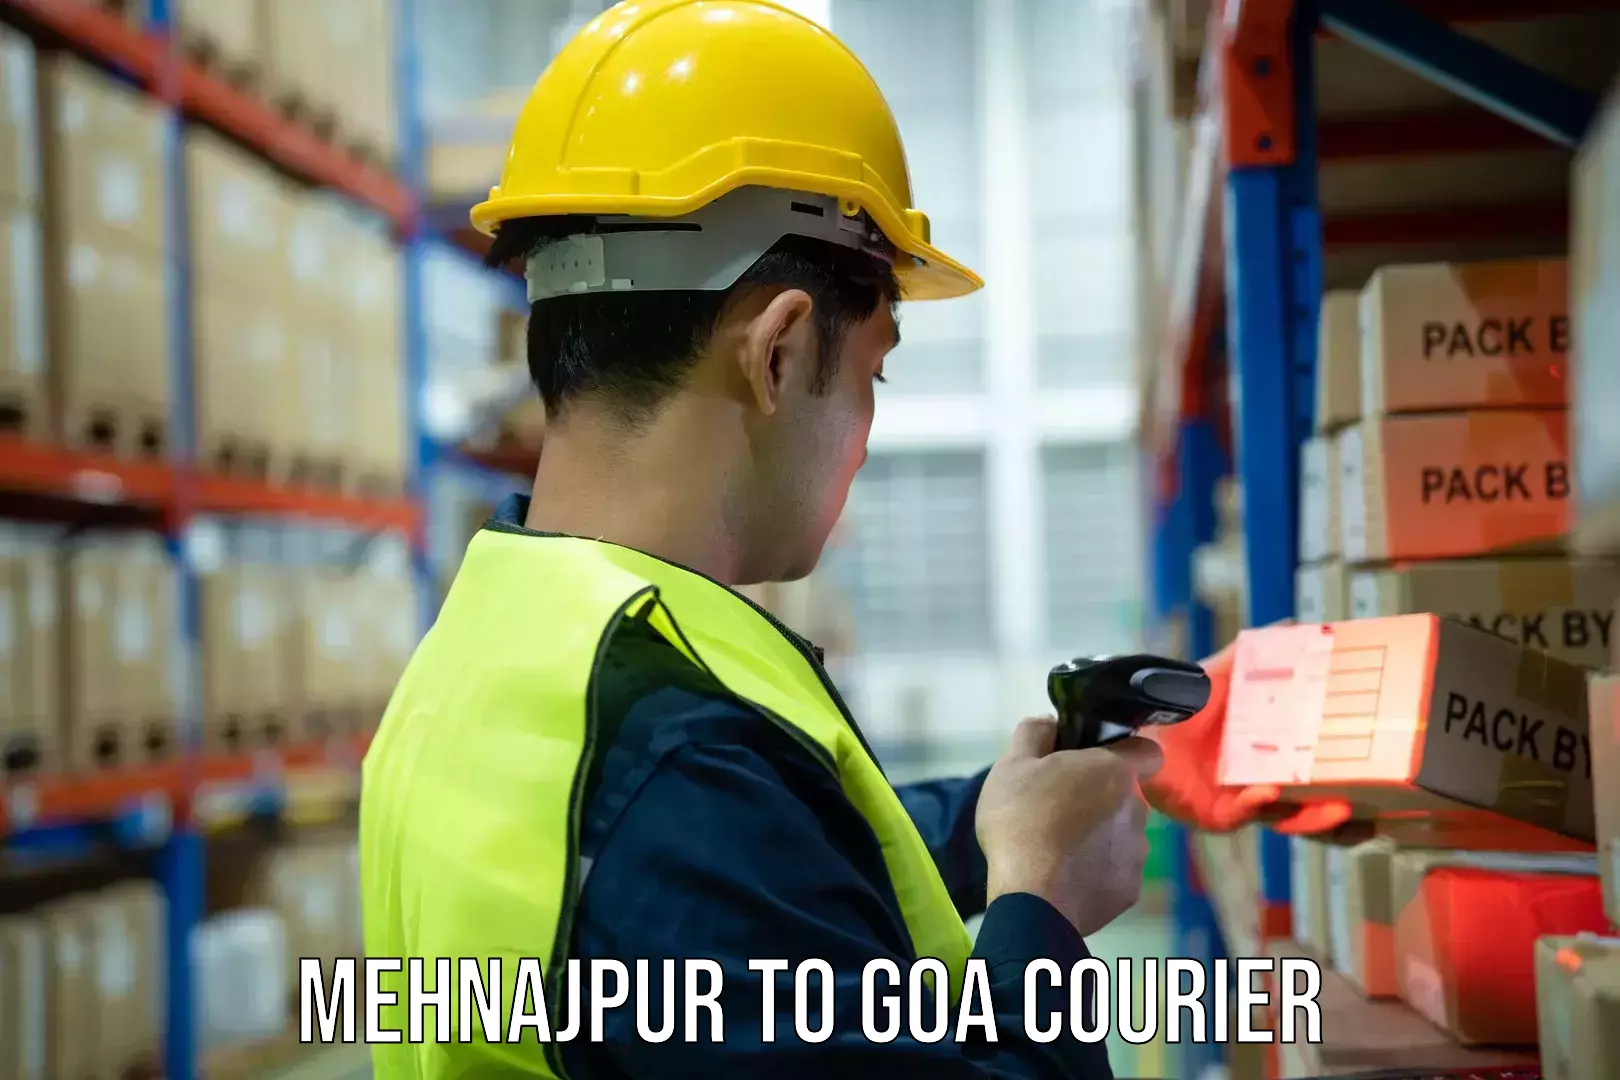 Global freight services Mehnajpur to Goa